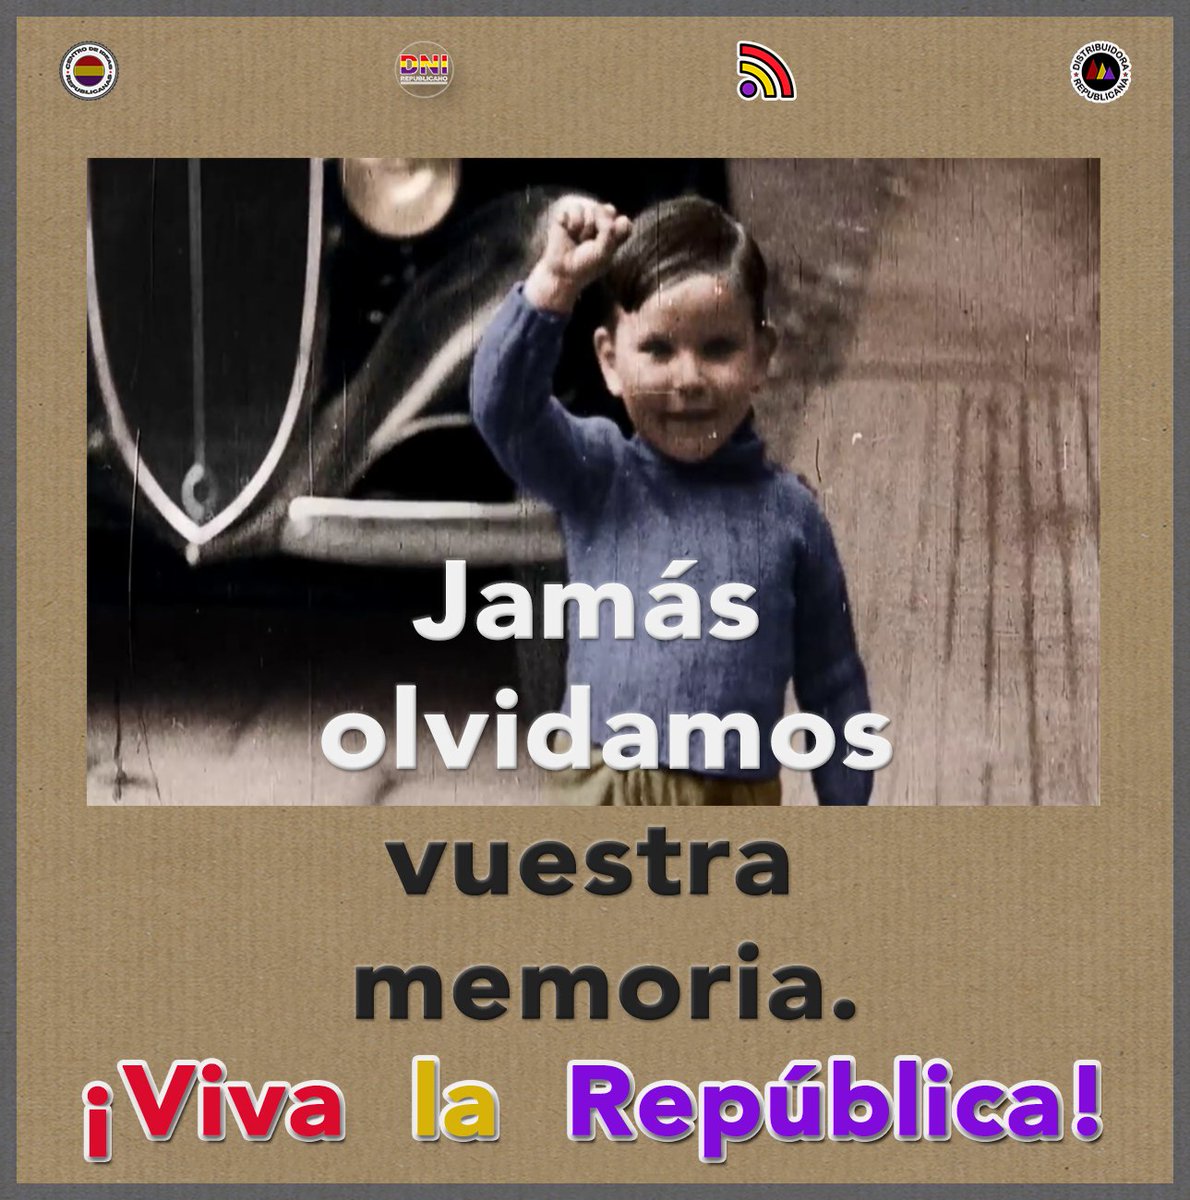 Jamás olvidamos vuestra memoria. 
¡Viva la República!  #MemoriaRepublicana